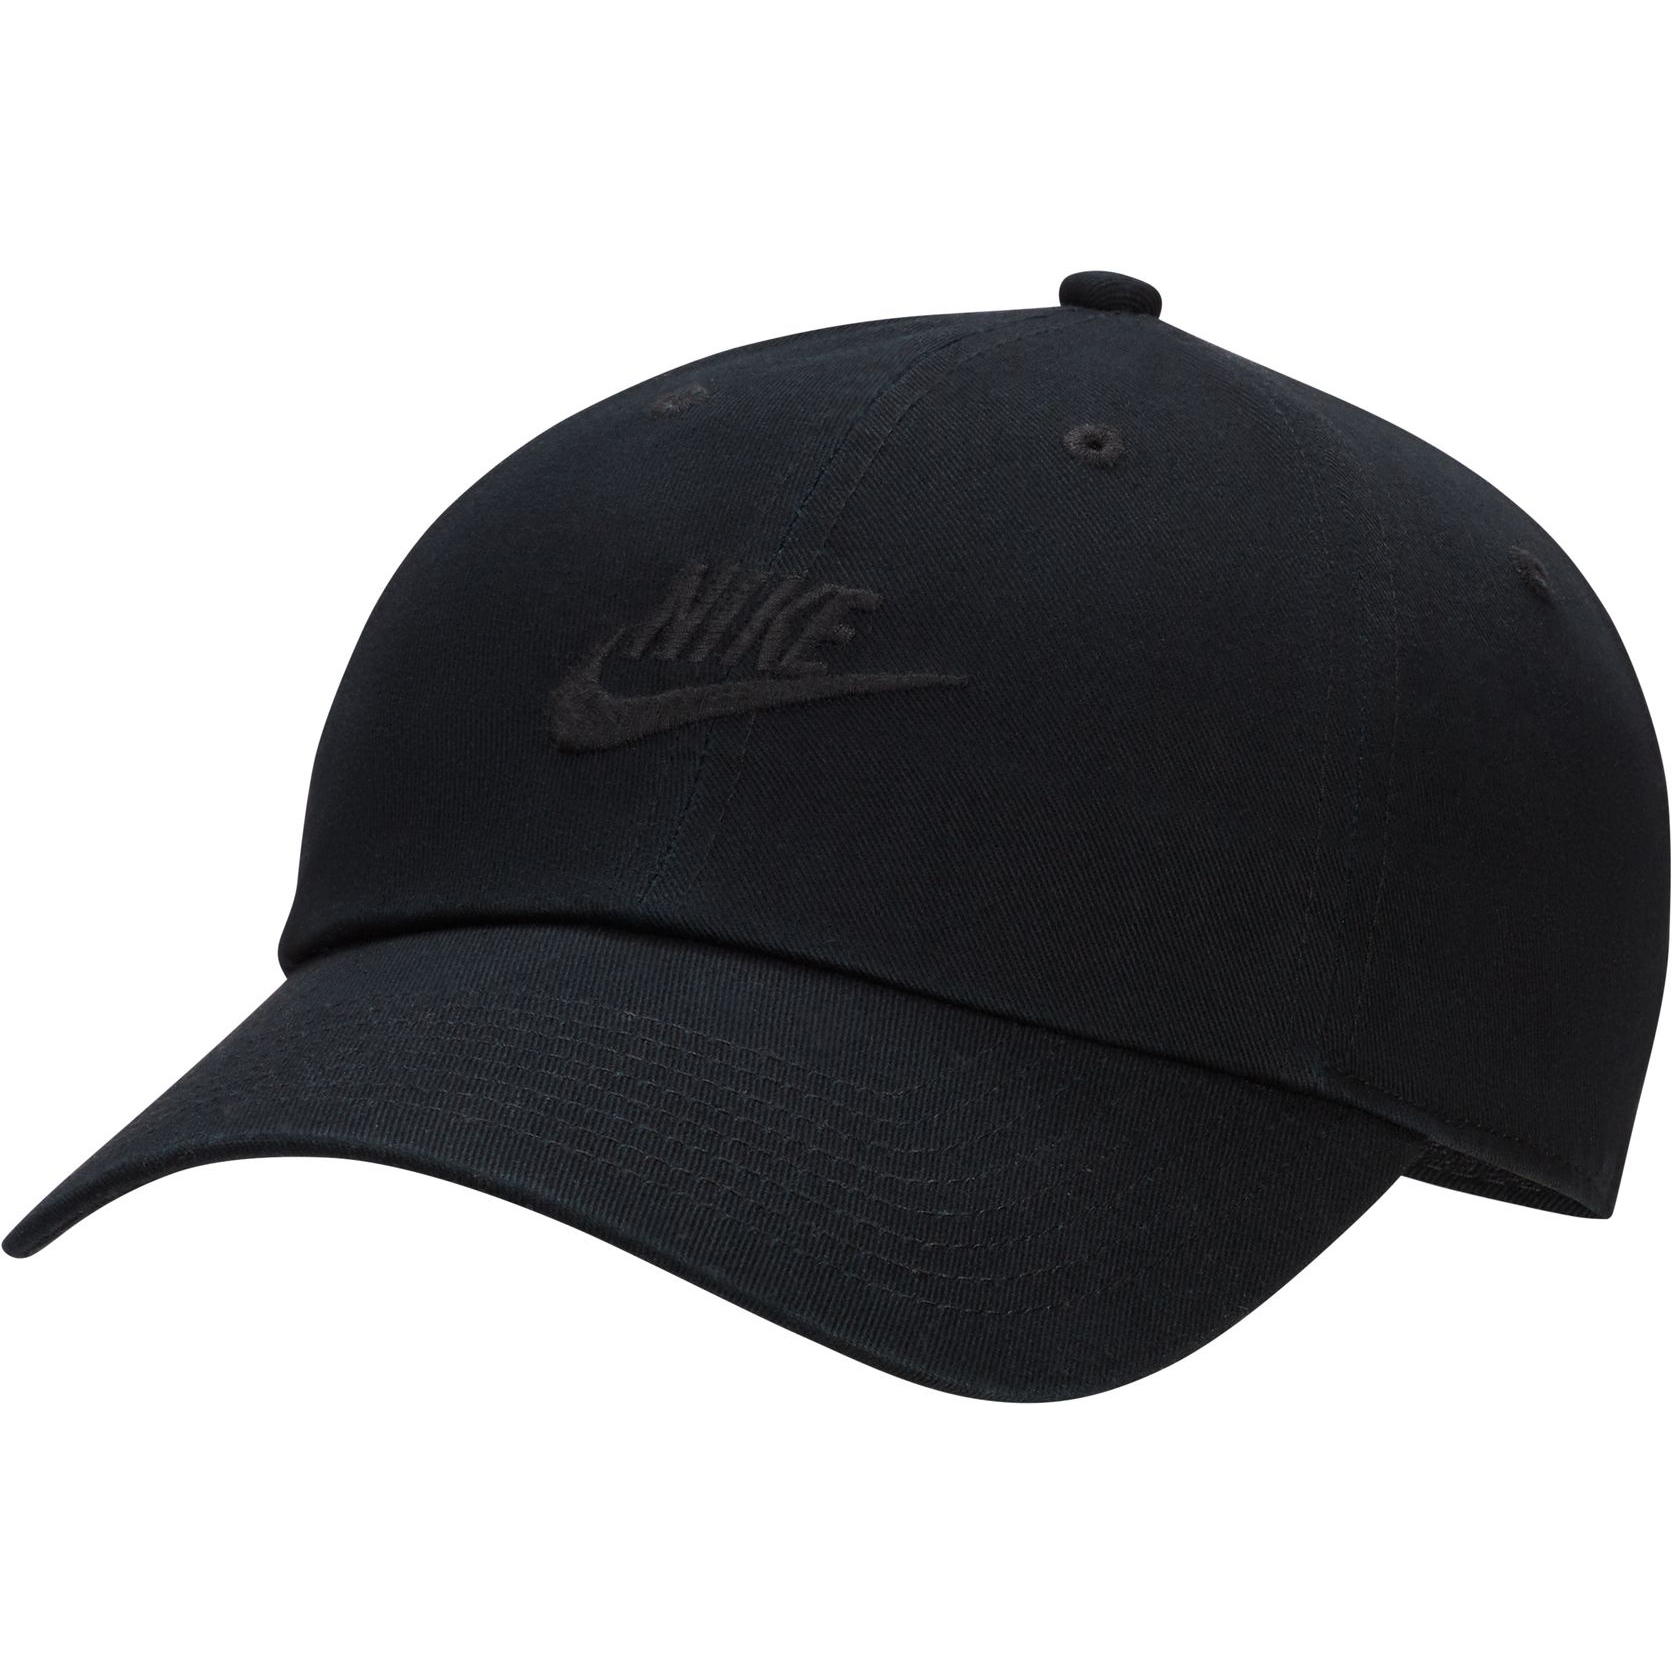 Produktbild von Nike Club Futura Wash Cap - schwarz/schwarz FB5368-010